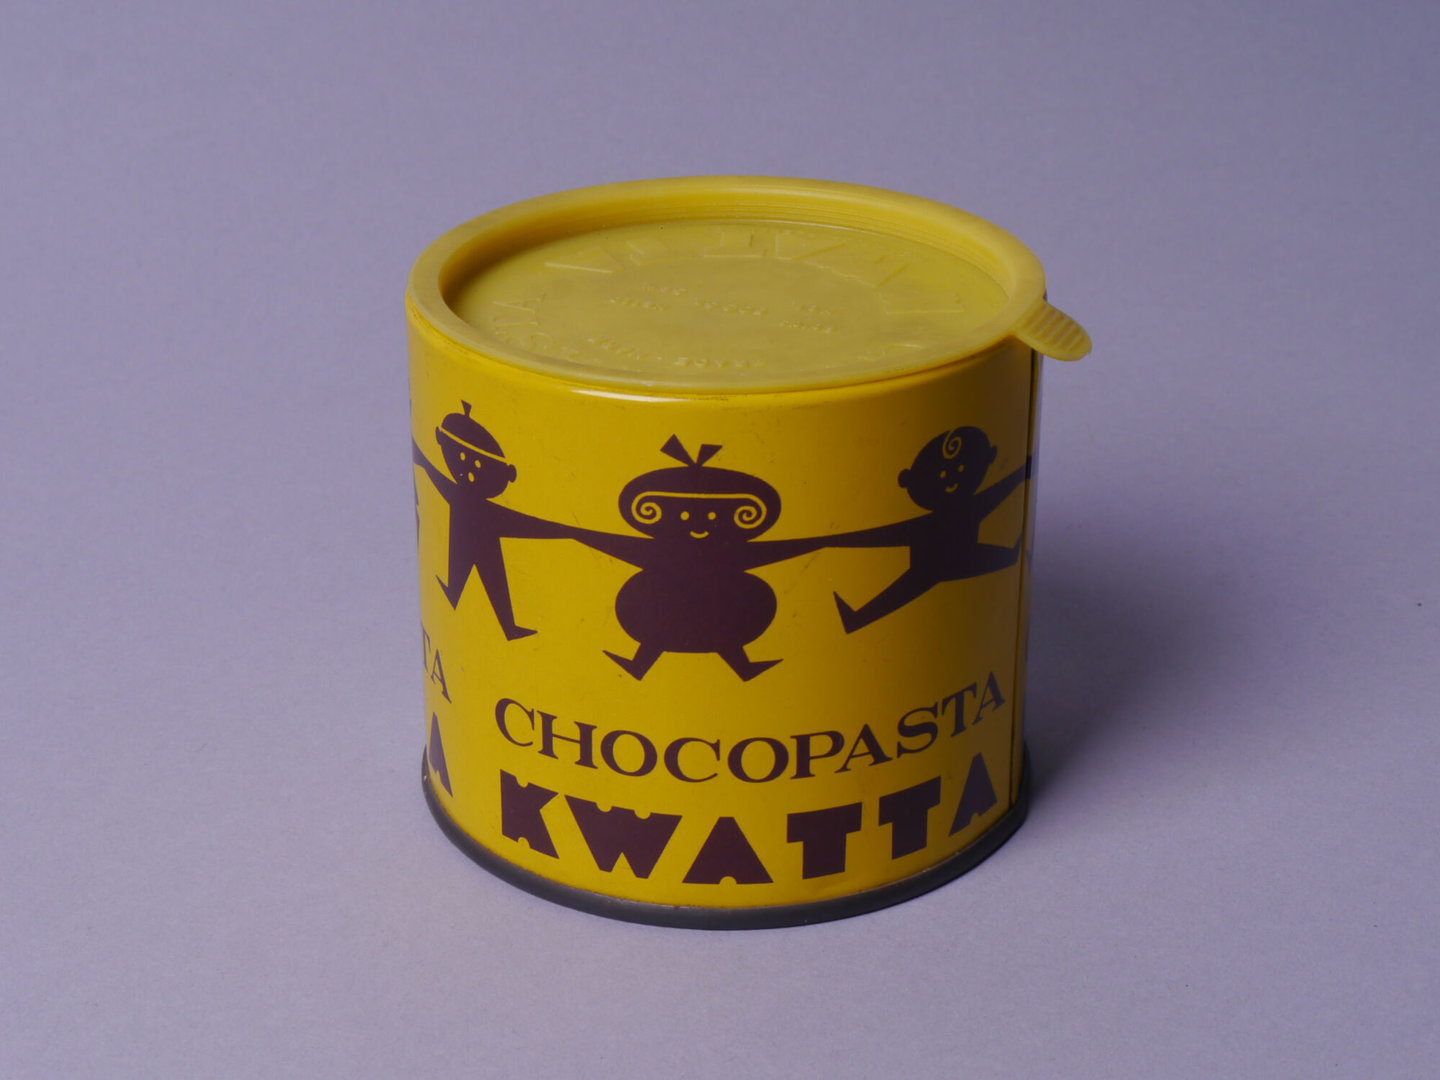 Blik voor chocopasta van het merk Kwatta